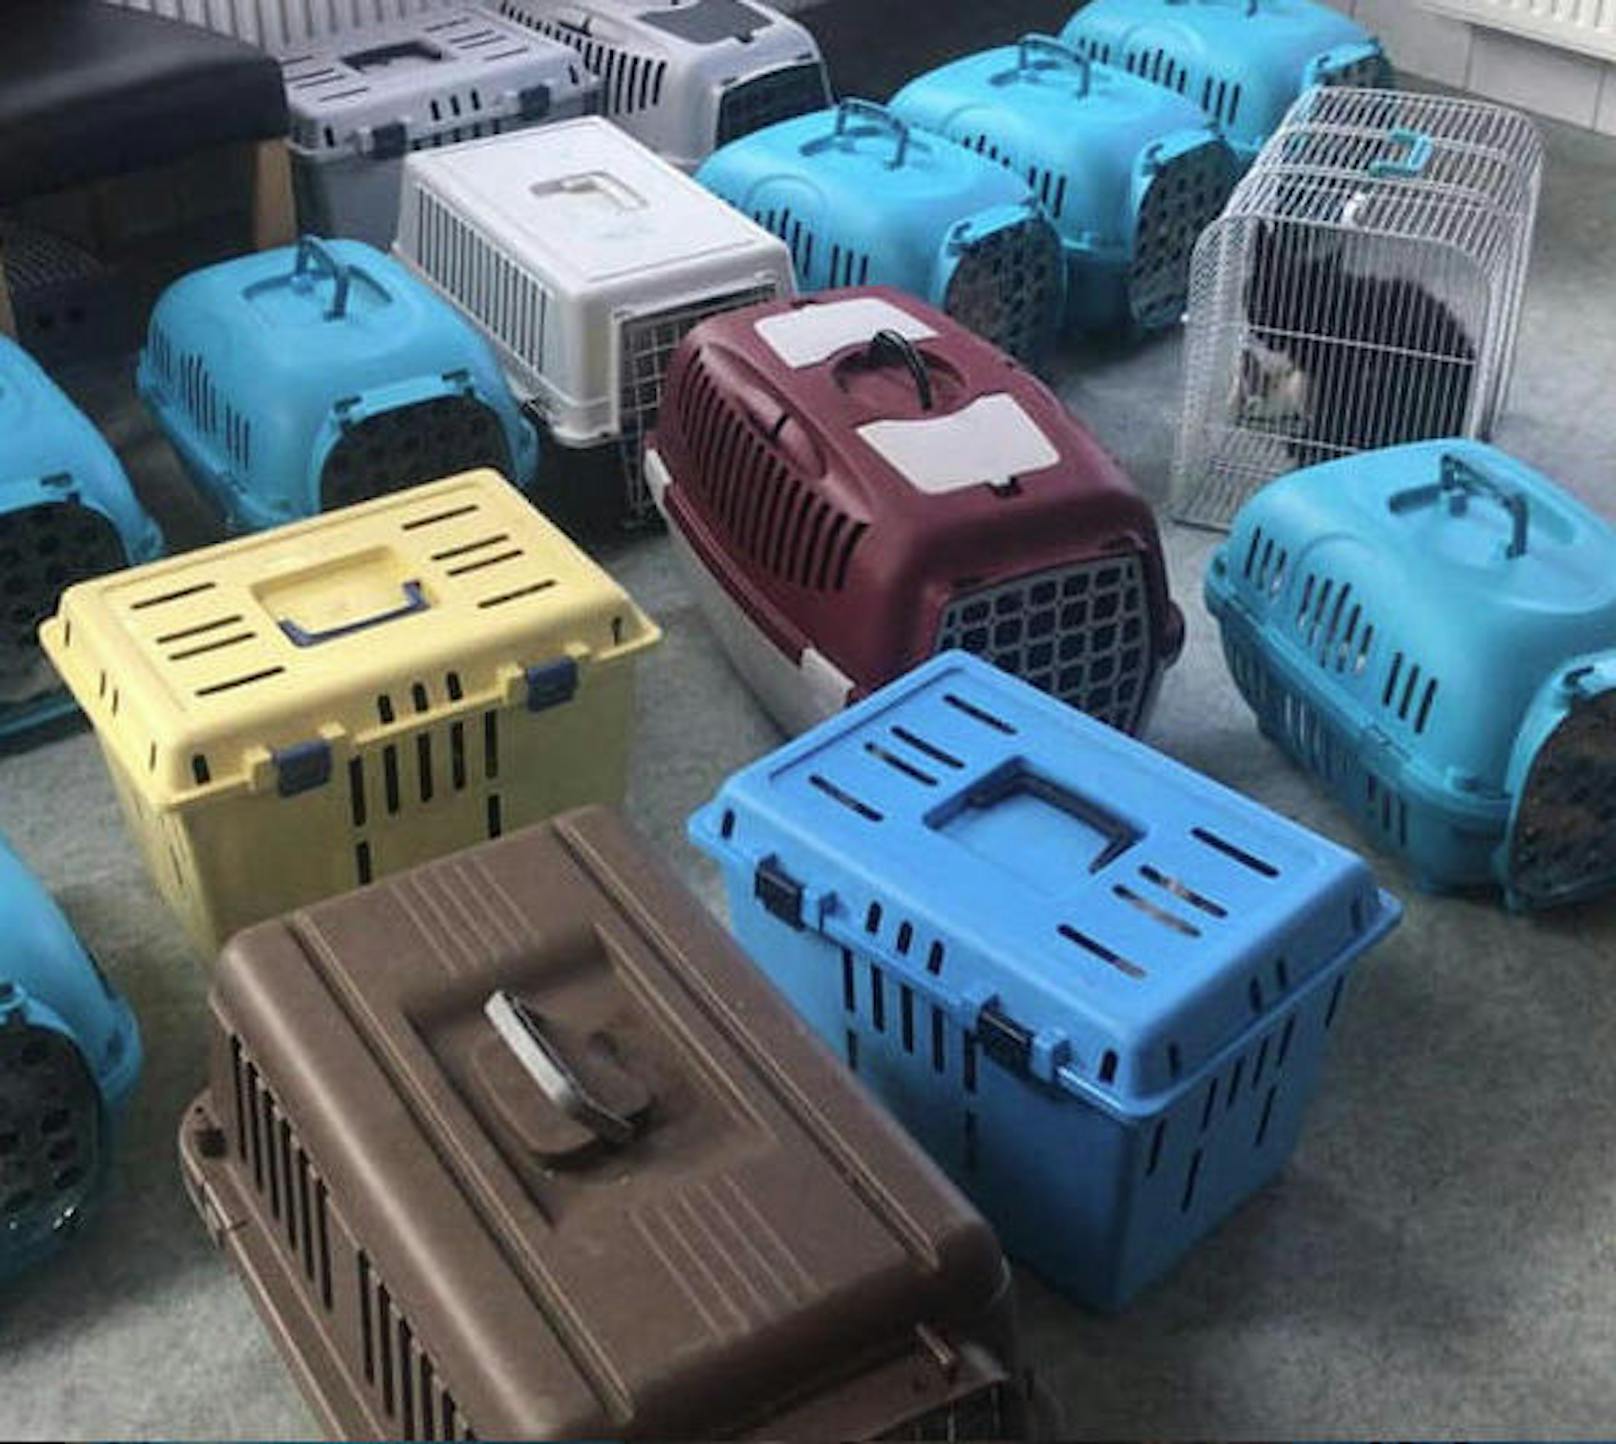 Die Tiere wurden jeweils zu zweit in Boxen auf dem Rücksitz und im Kofferraum transportiert.